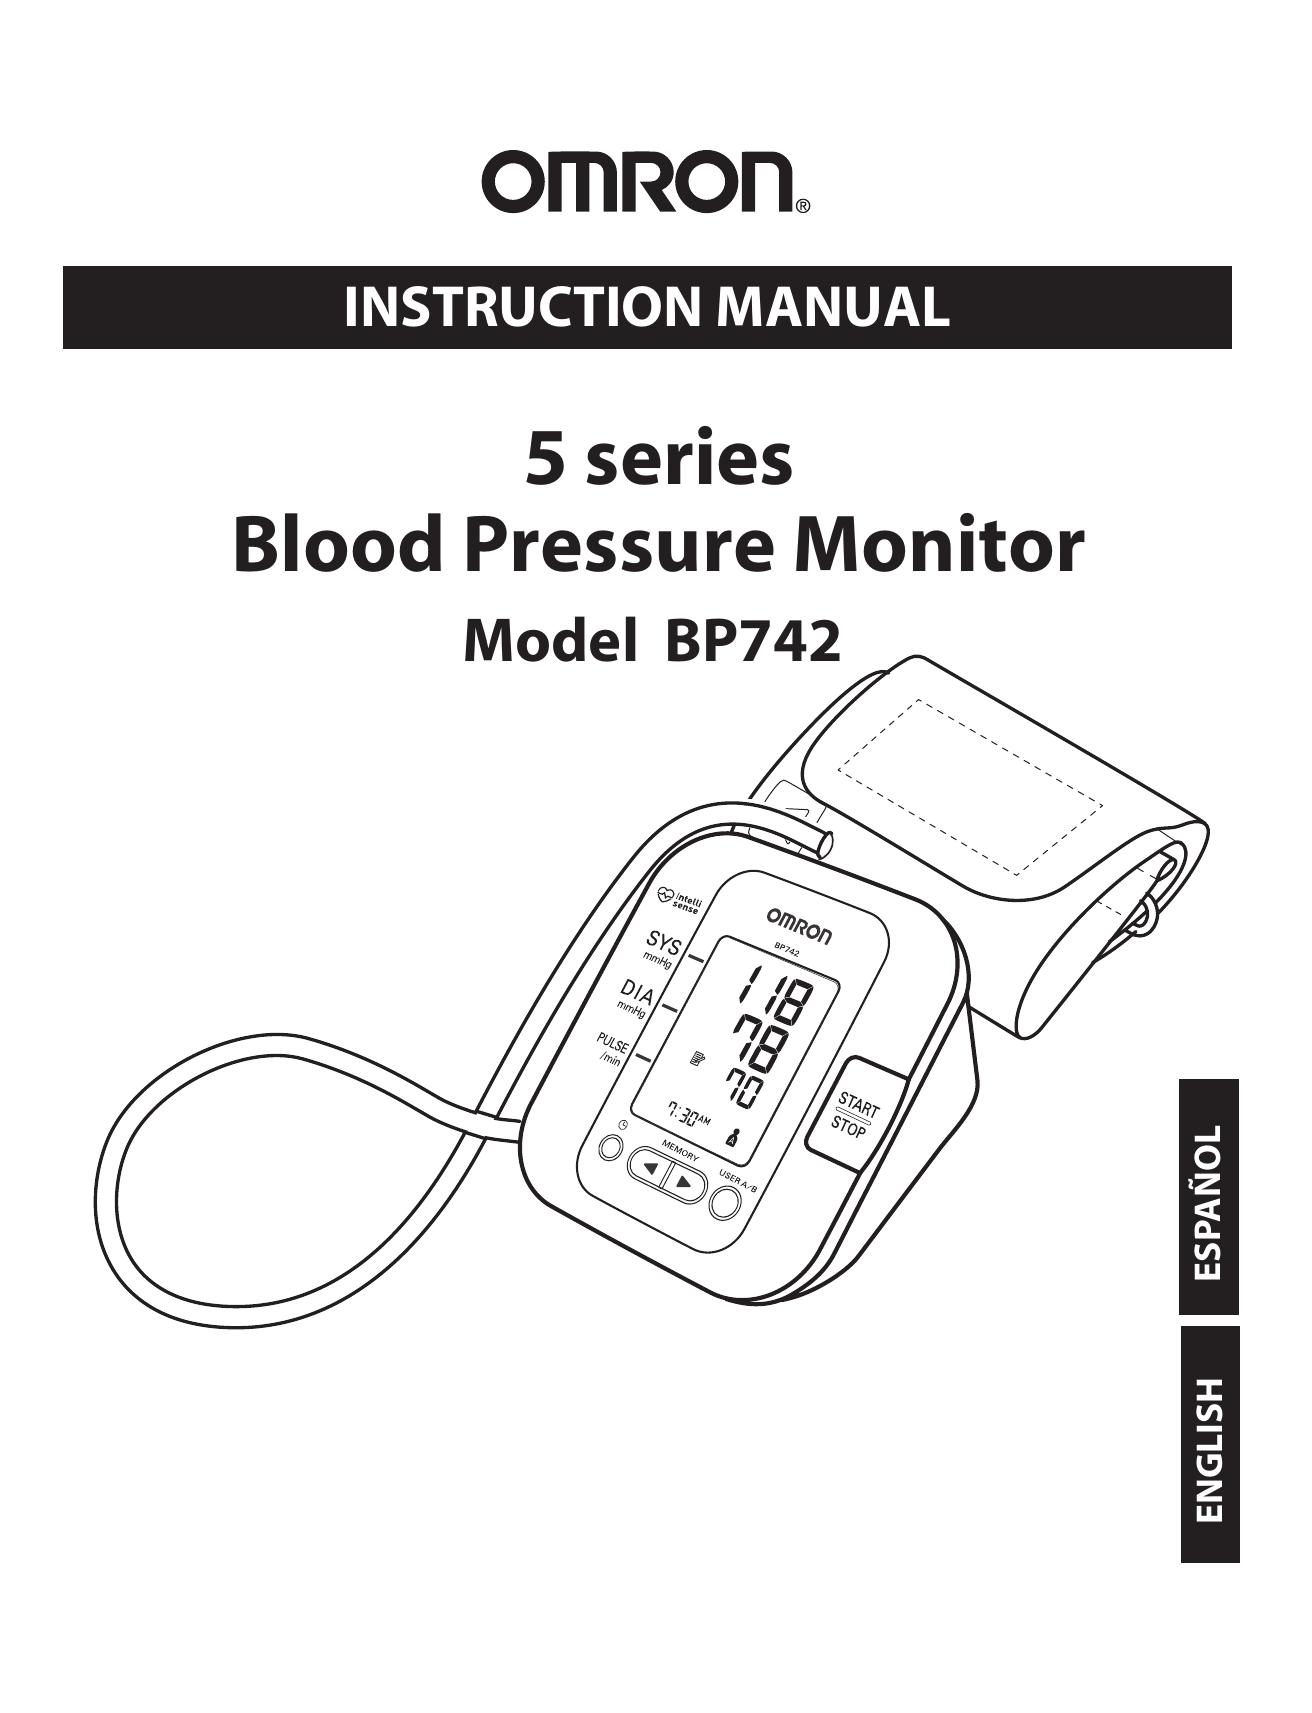 Omron BP742 Blood Pressure Monitor User Manual